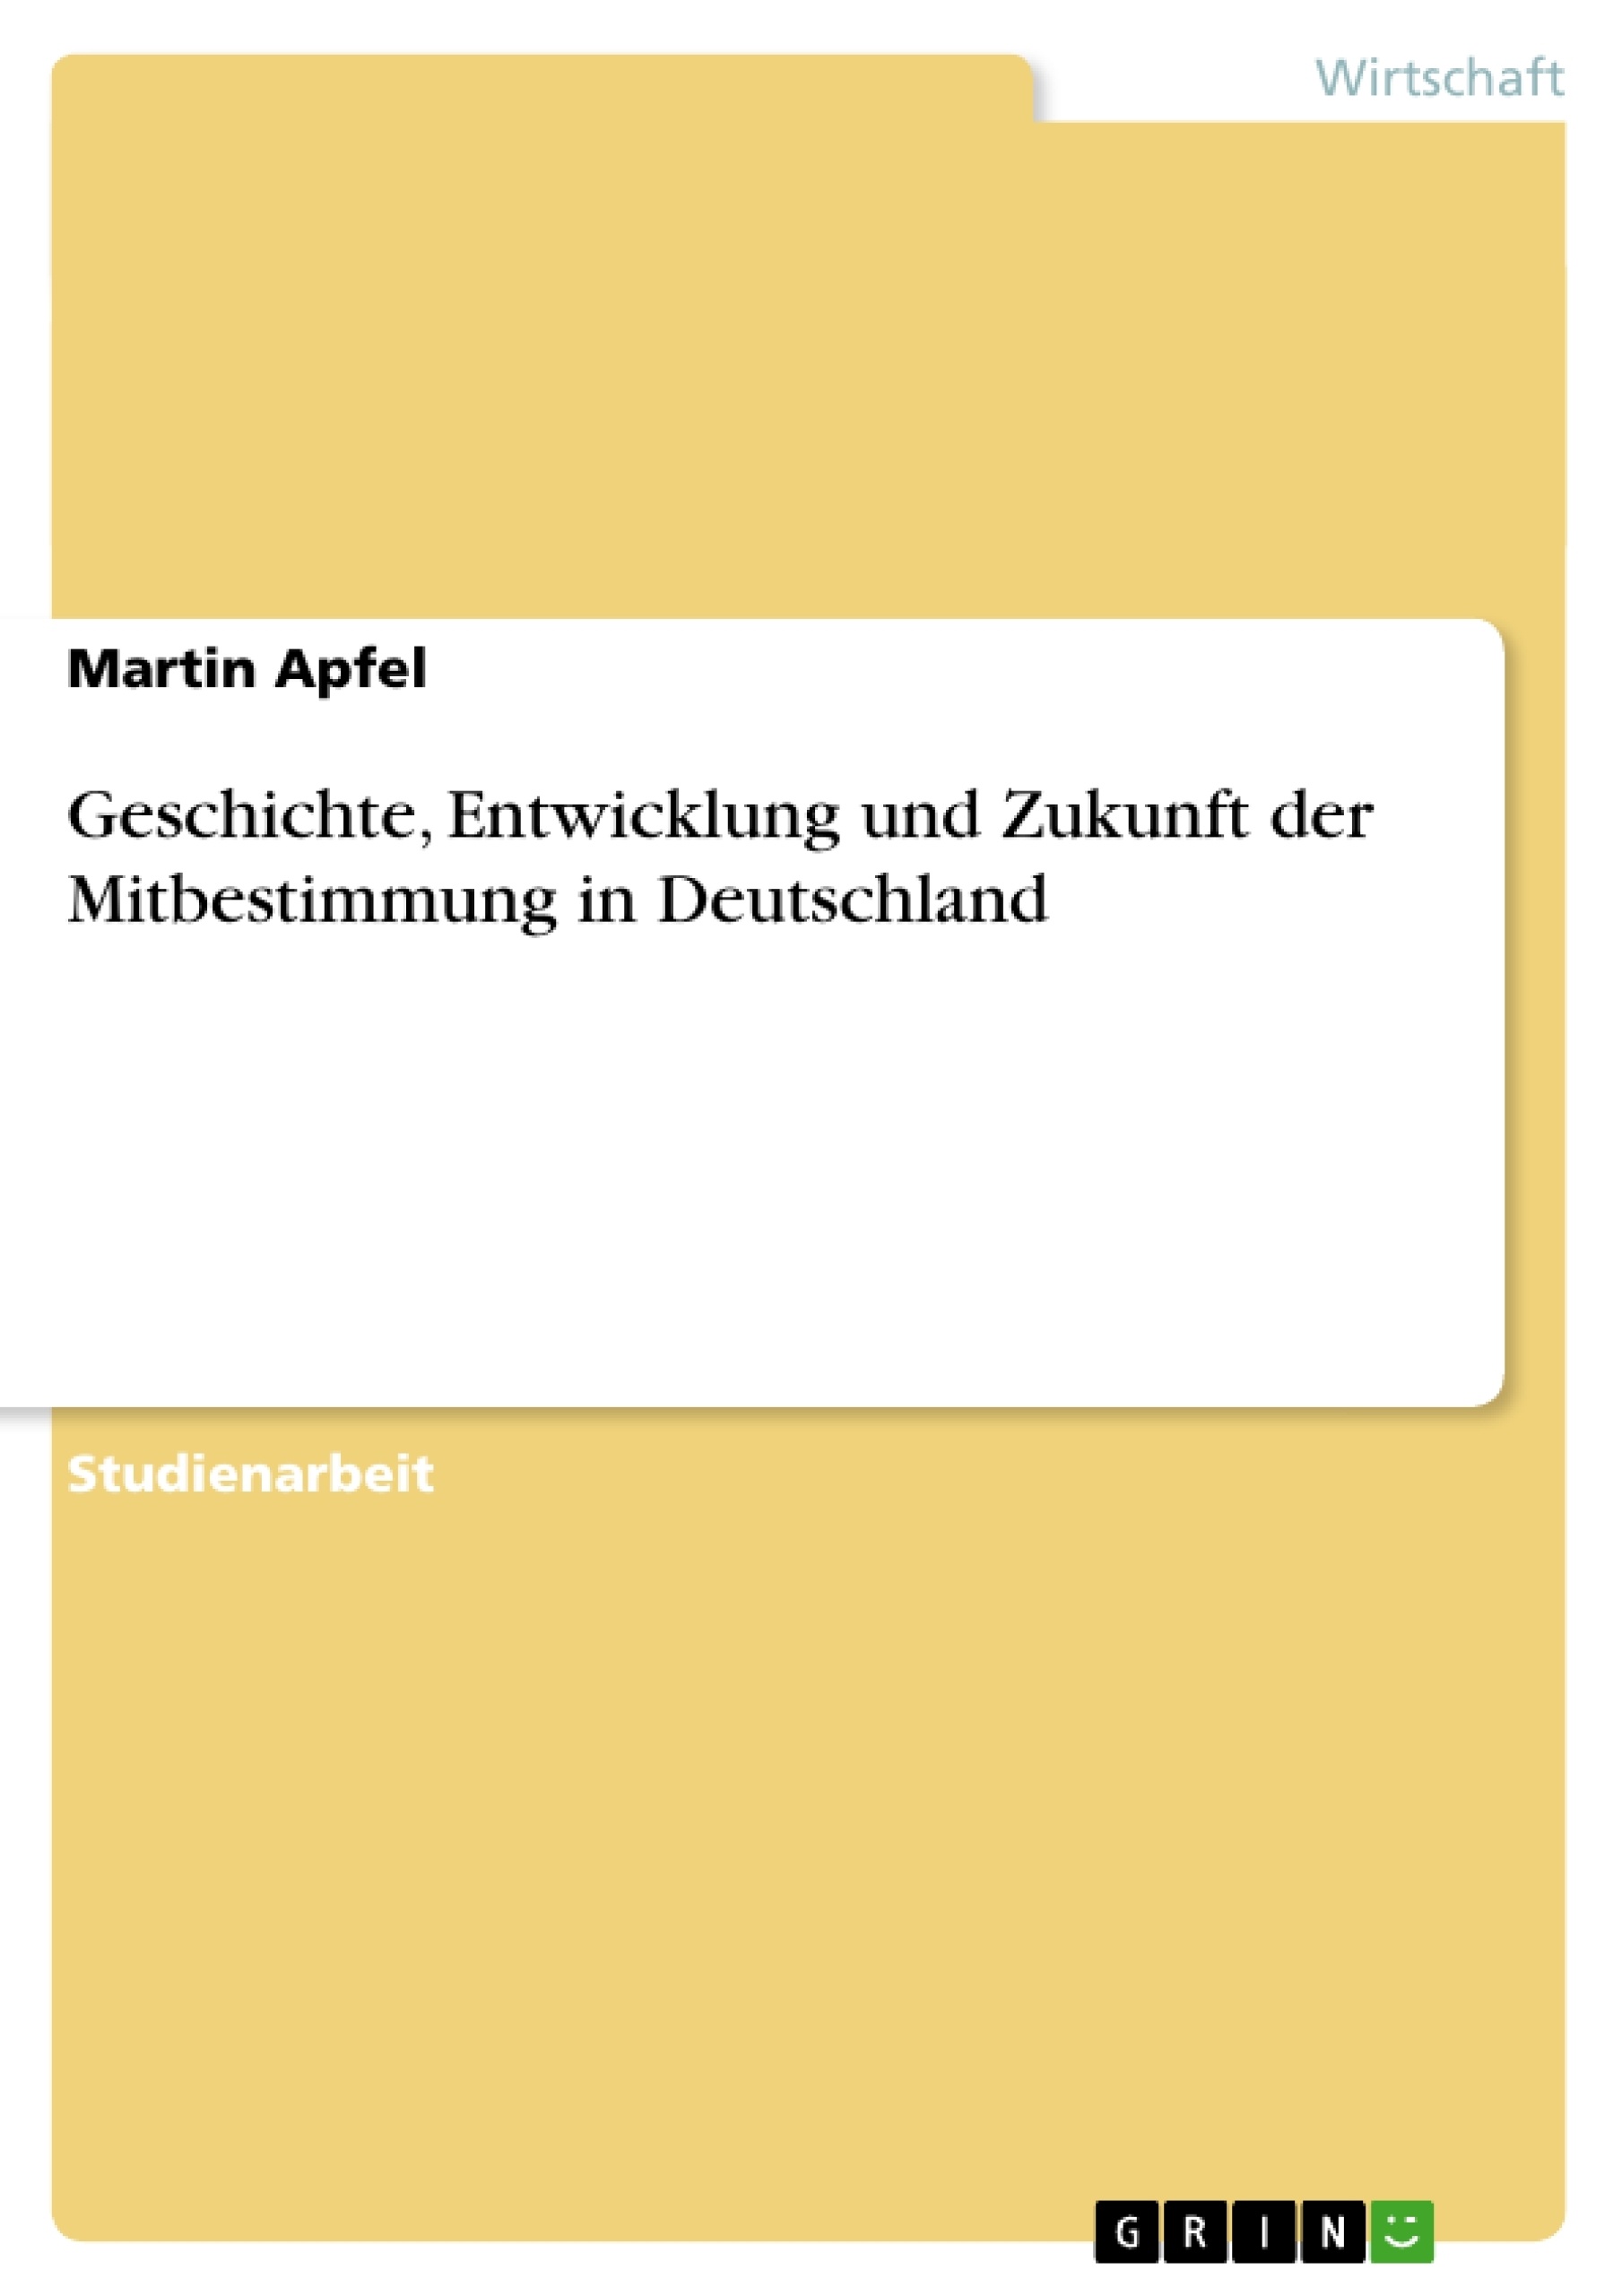 Title: Geschichte, Entwicklung und Zukunft  der Mitbestimmung in Deutschland